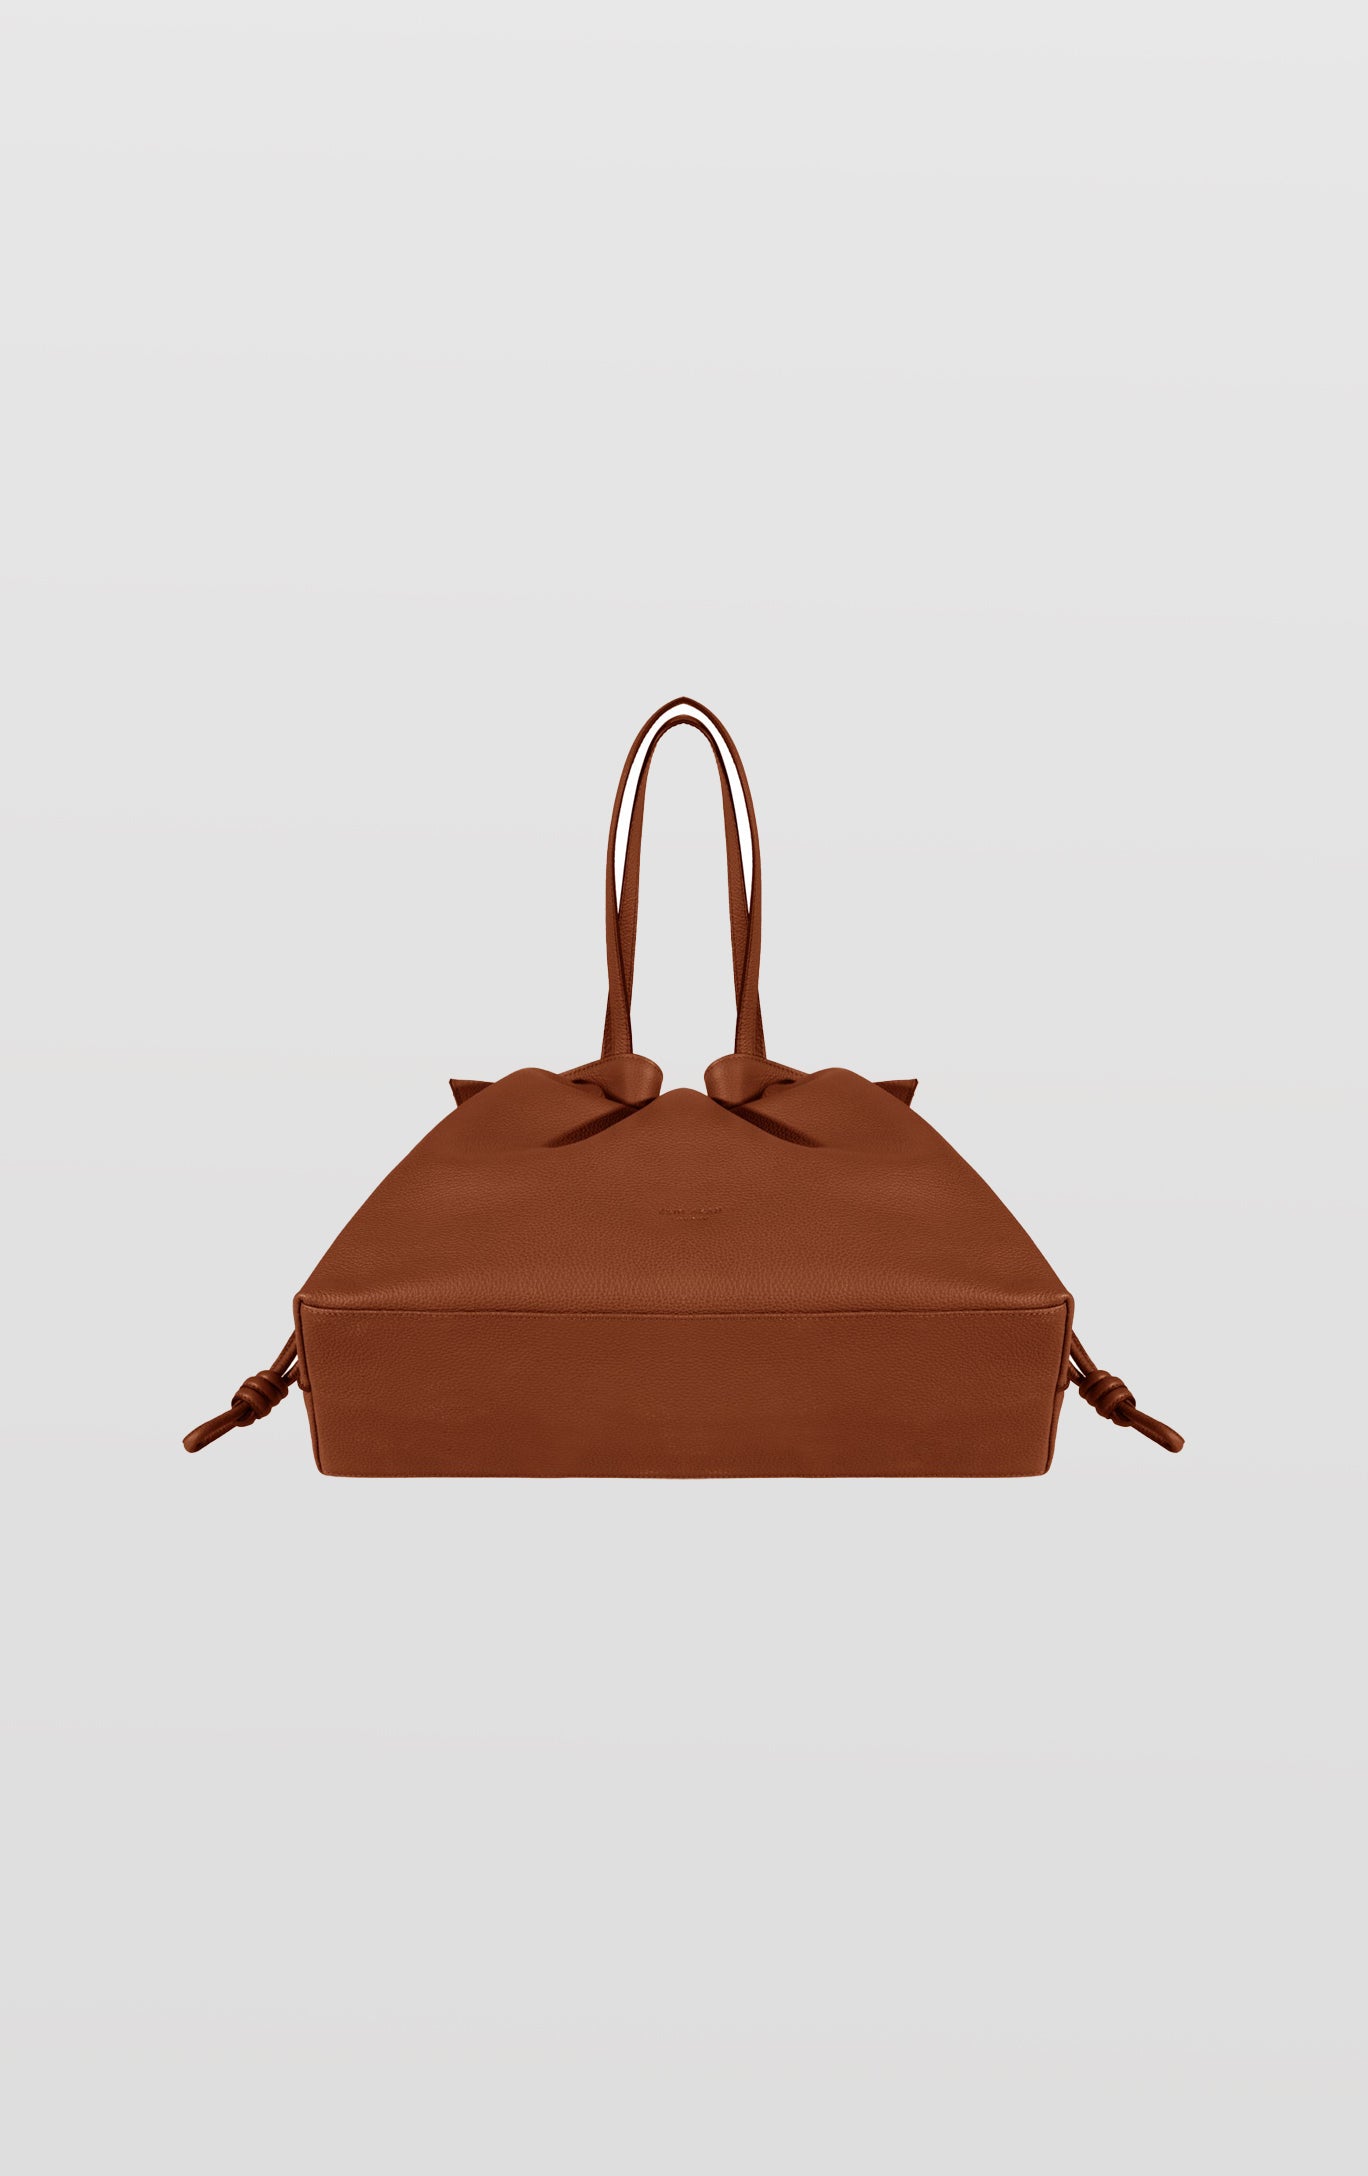 Emma, Tan Leather Tote Bag